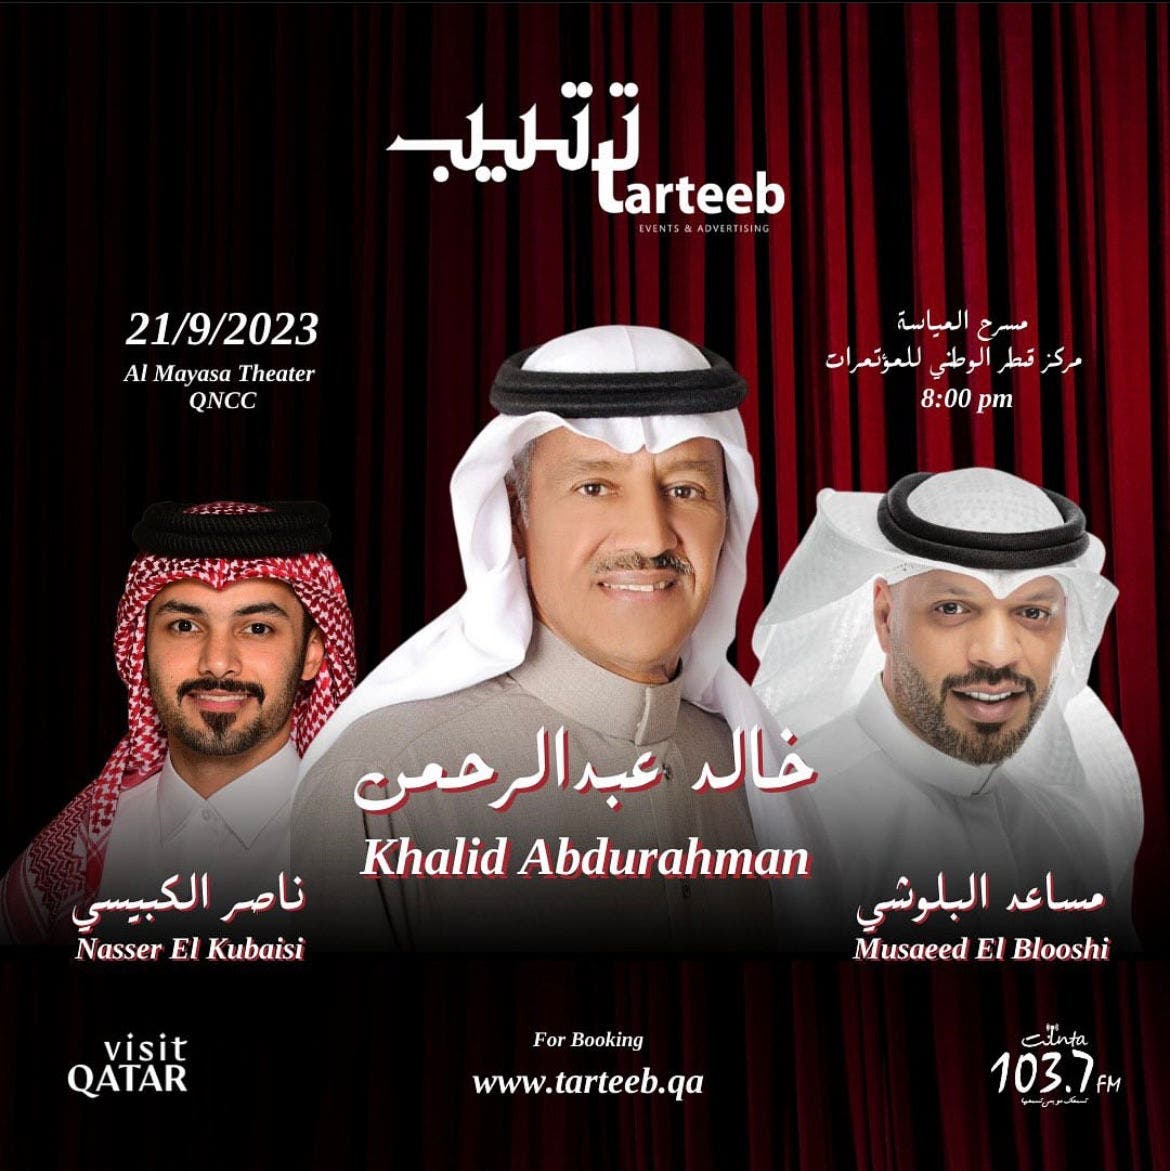 حفل غنائي للفنانين خالد عبدالرحمن ومساعد البلوشي وناصر الكبيسي